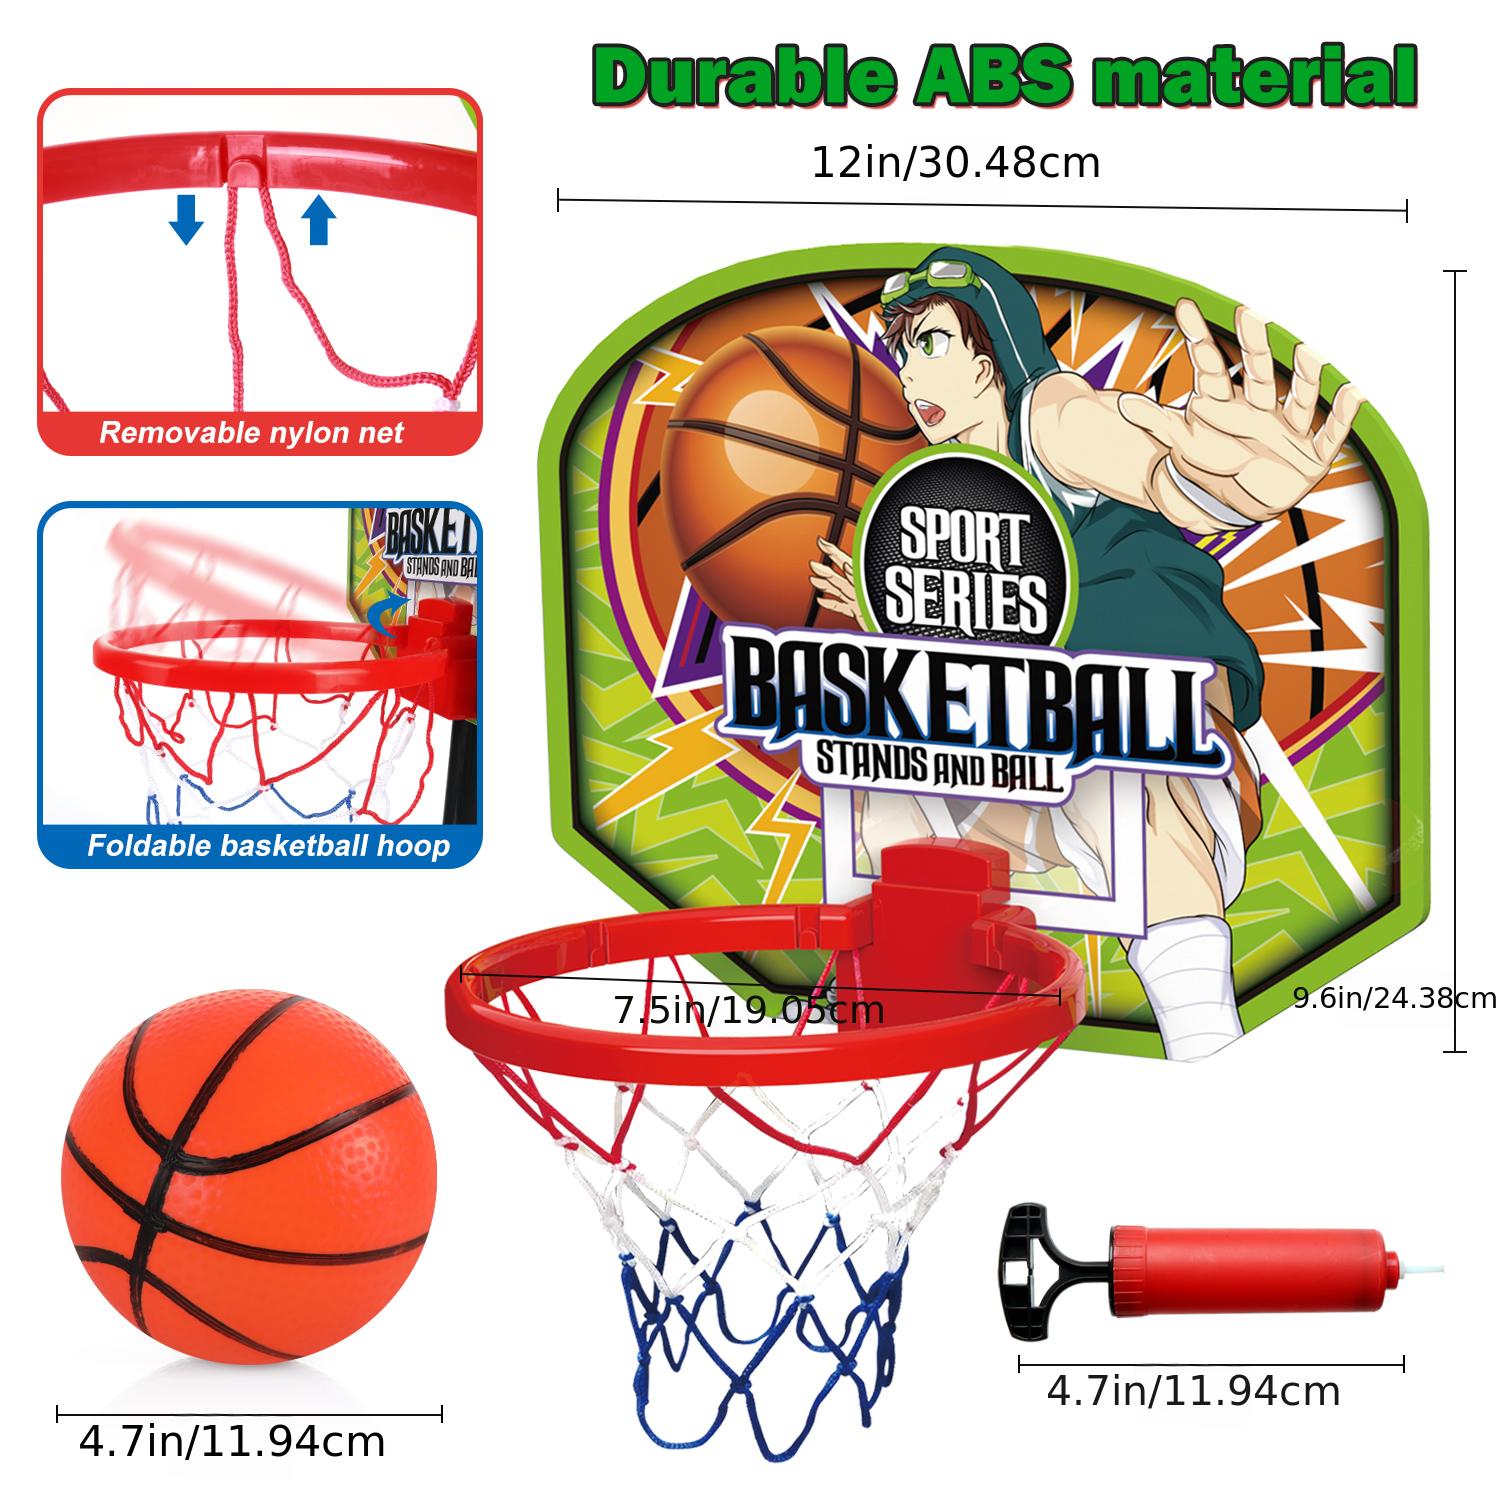 Panier de Basket-Ball avec Ballon et Pompe